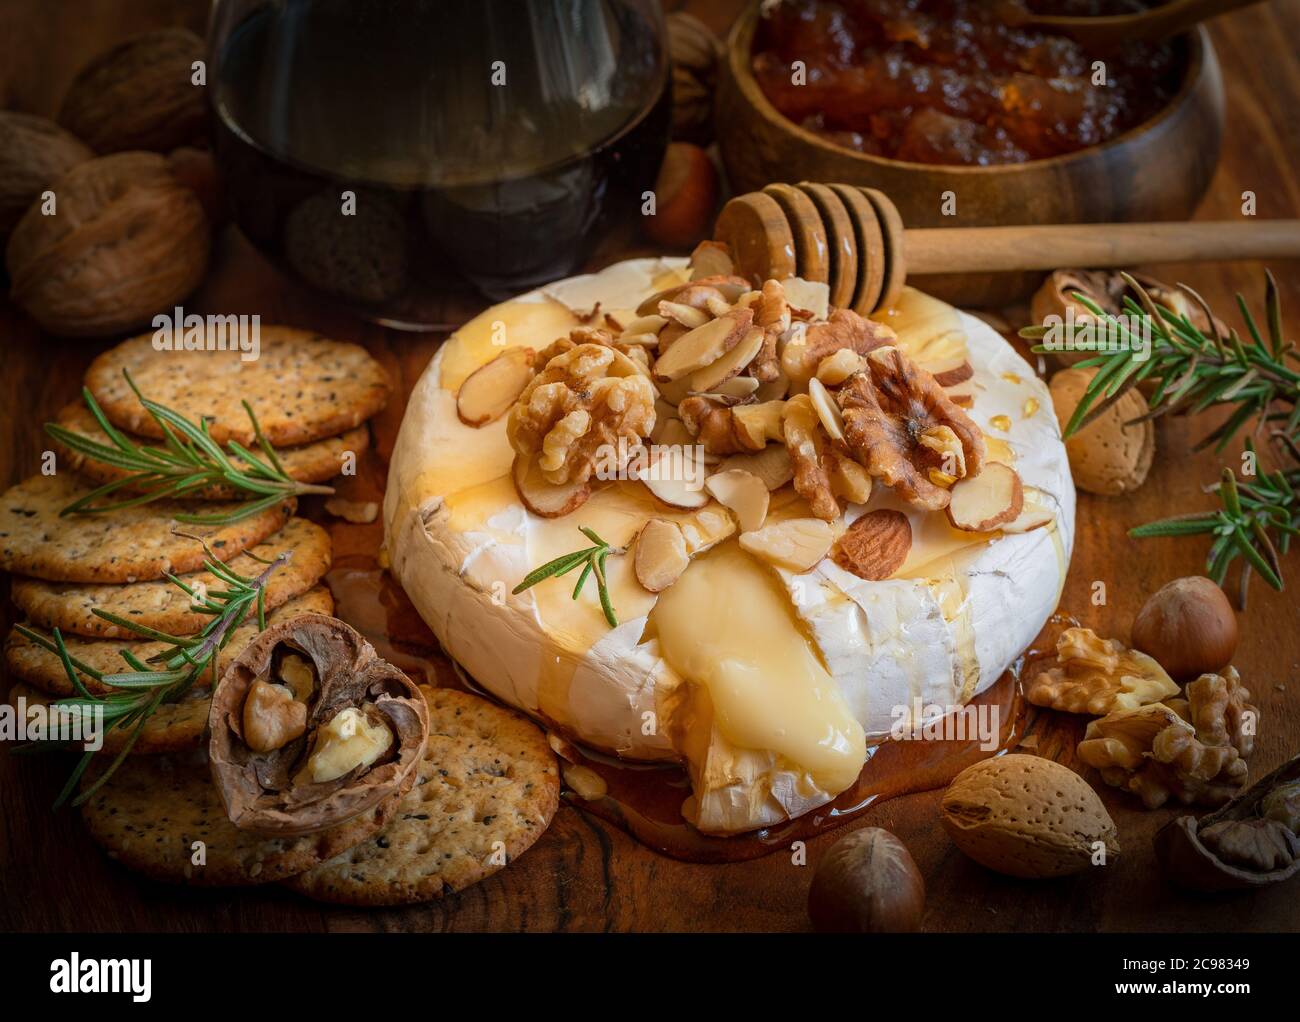 Käseplatte für eine Vorspeise serviert: Gebackene Brie, Cracker, Marmelade und Nüsse. Stockfoto